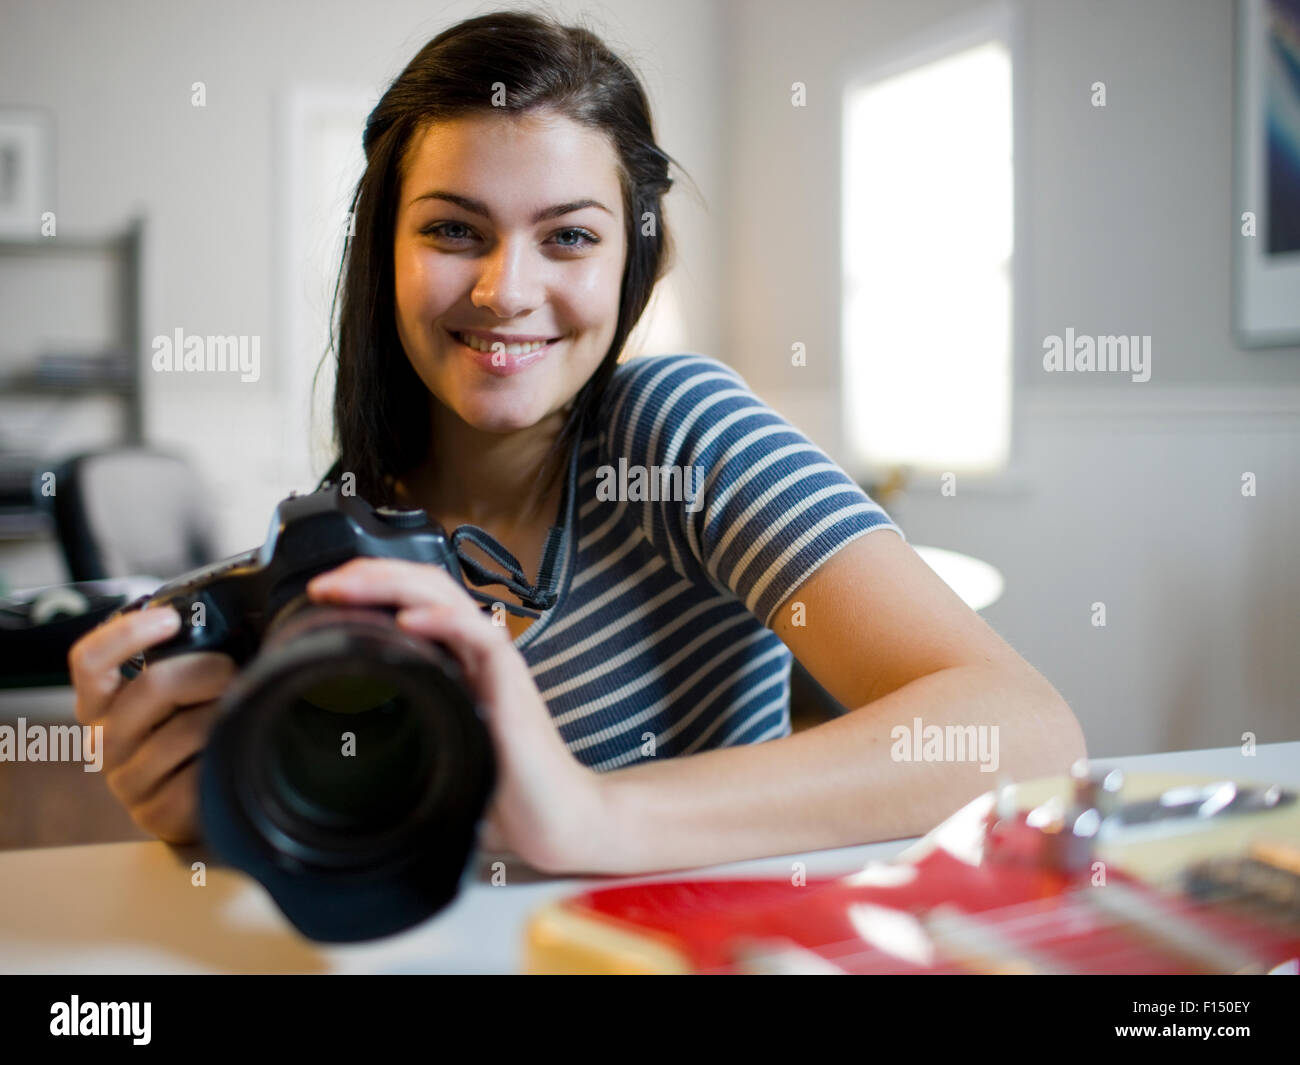 USA, Utah, Orem, Portrait of teenage girl (16-17) holding camera Banque D'Images